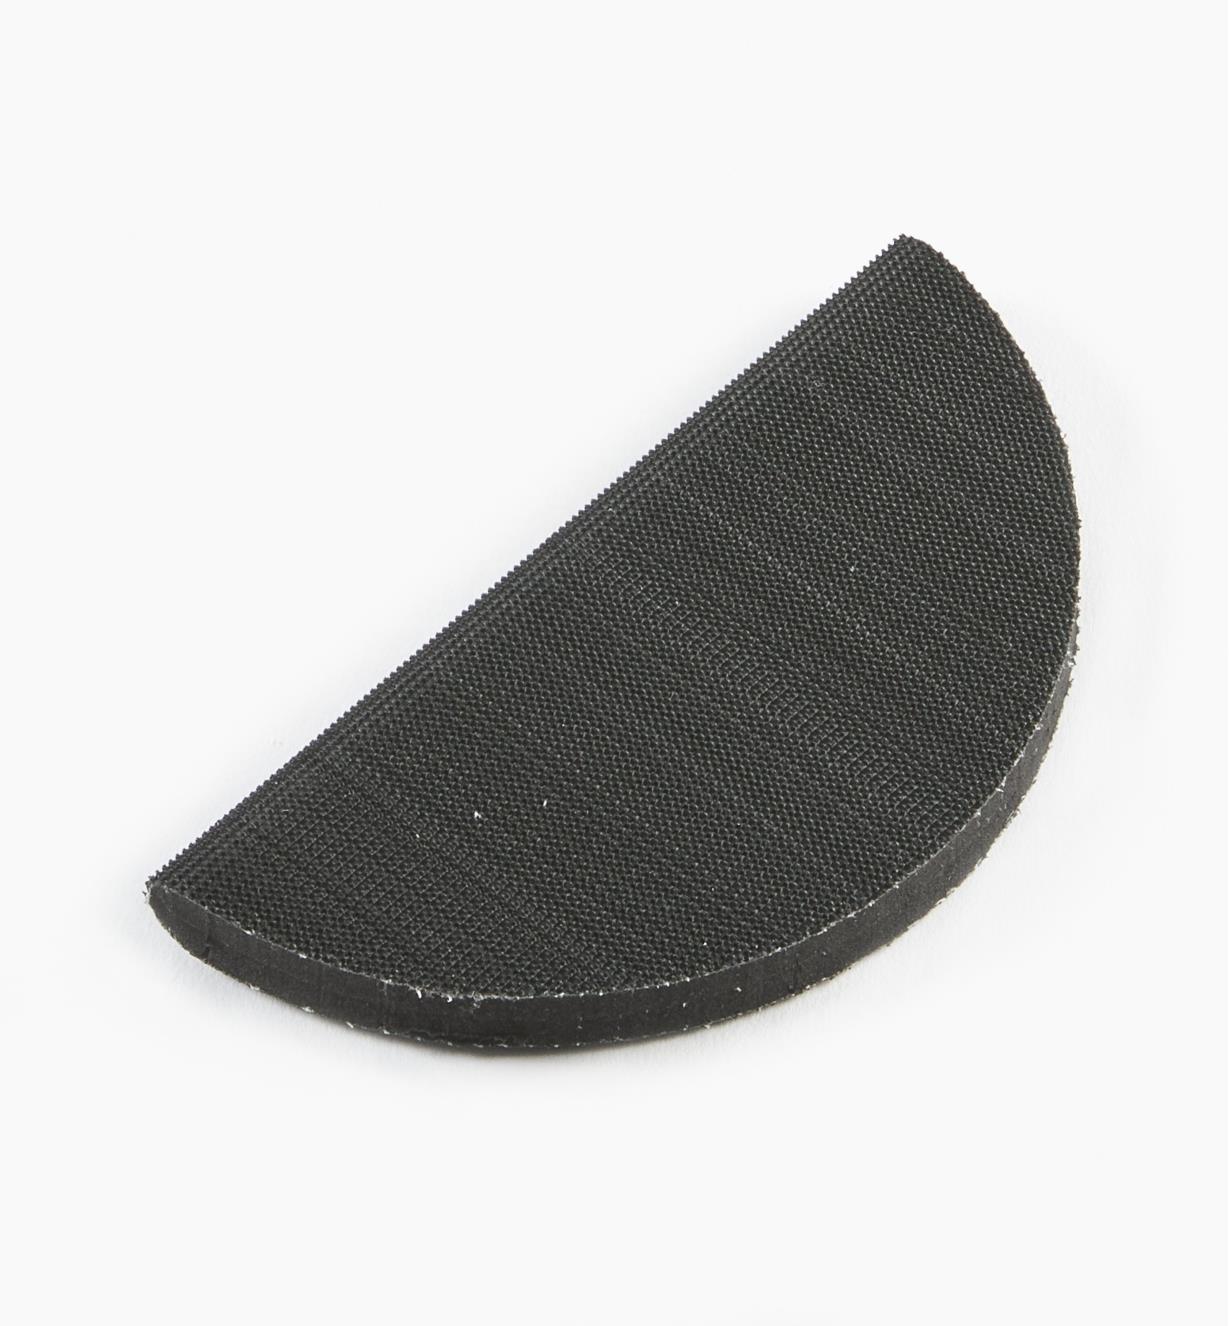 08K3151 - Grip-Faced Half-Round Hand-Sanding Pad